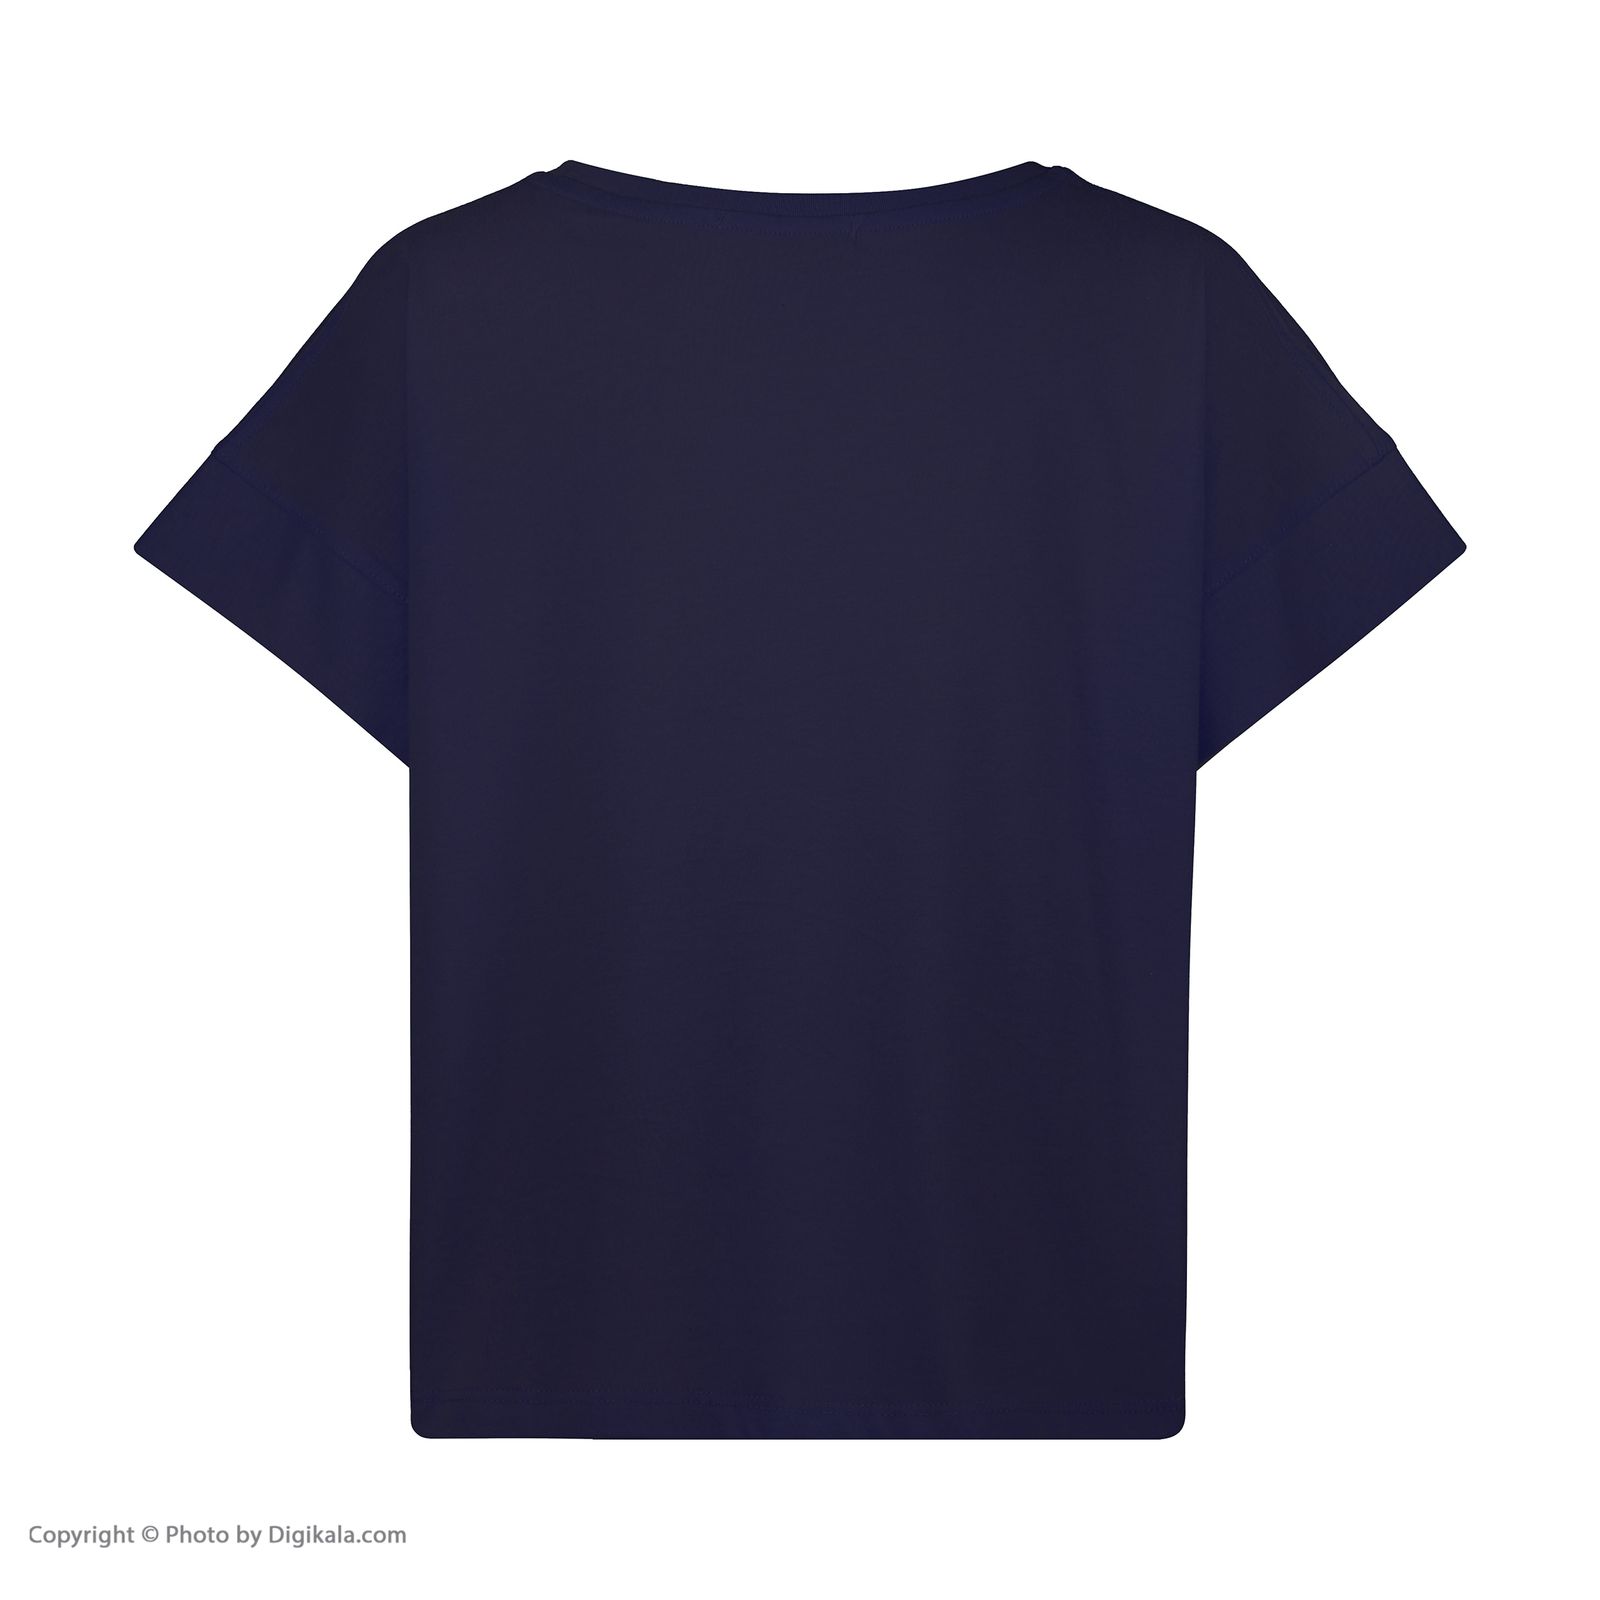  تی شرت زنانه جامه پوش آرا مدل 4012019396-59 -  - 4